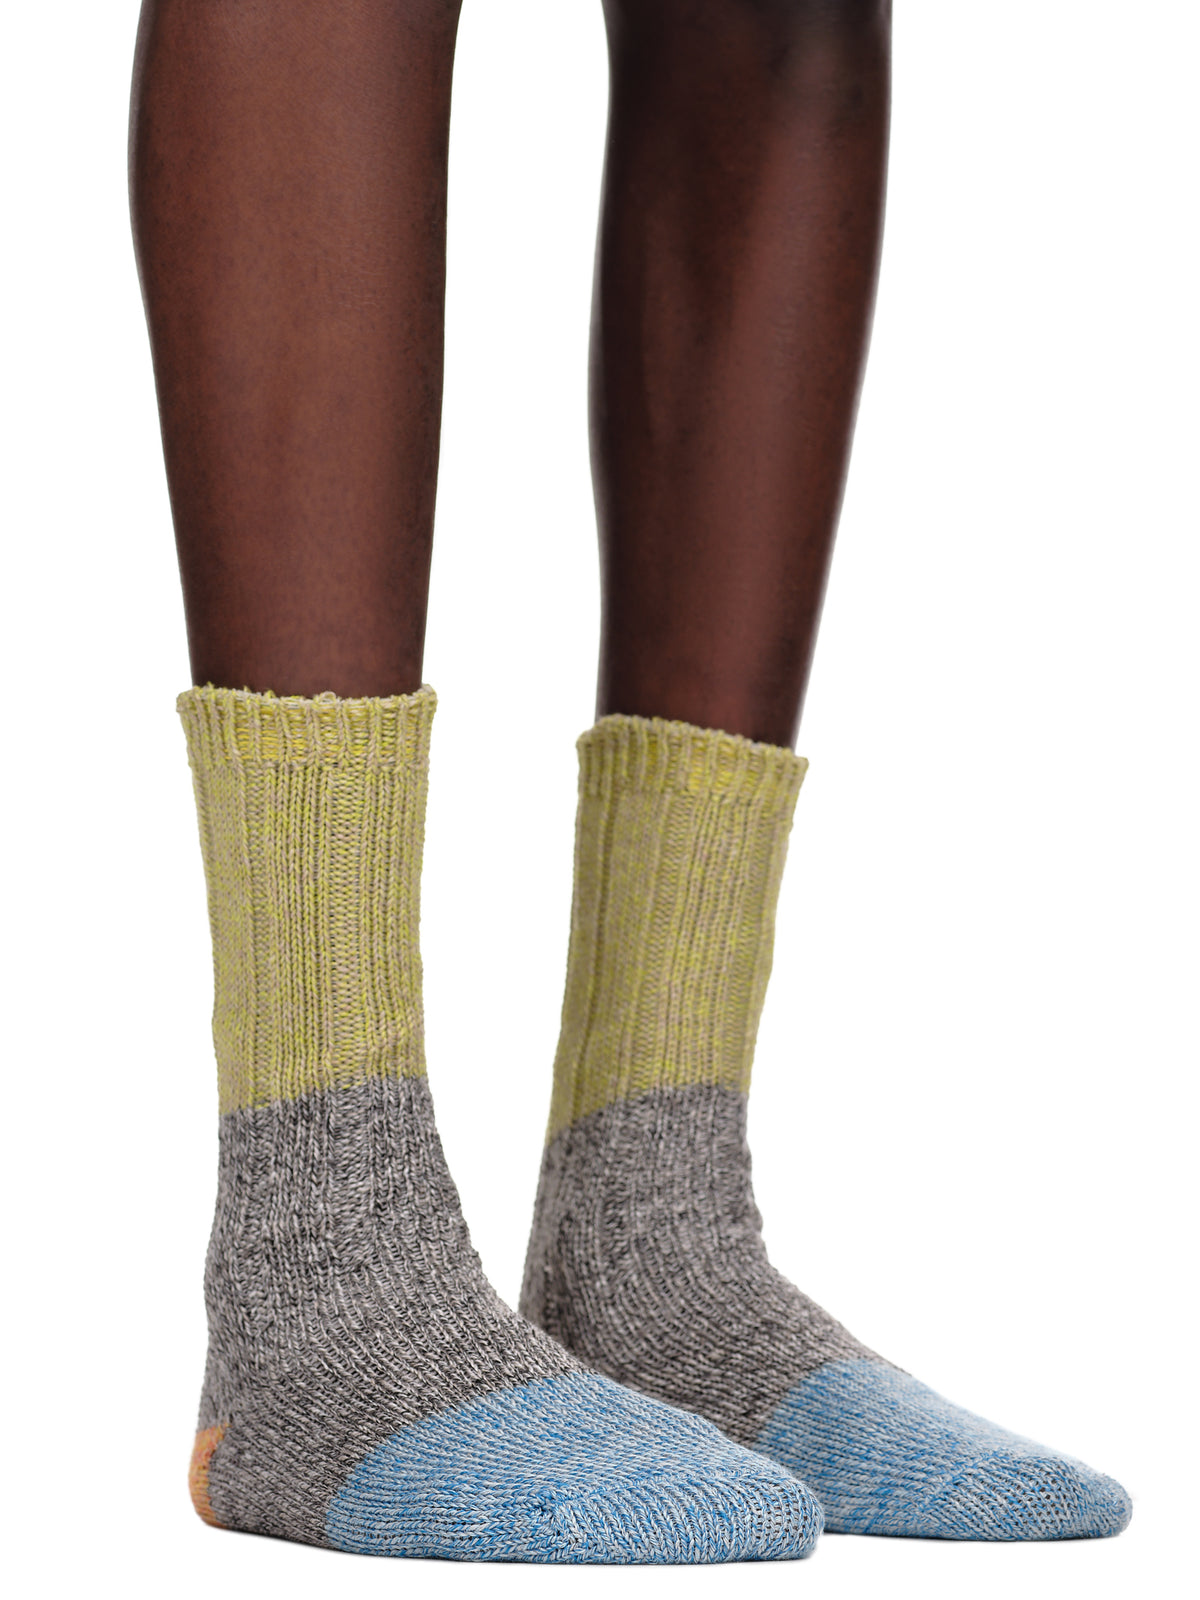 Kapital Jacquard Color Block Socks | H. Lorenzo - detail 